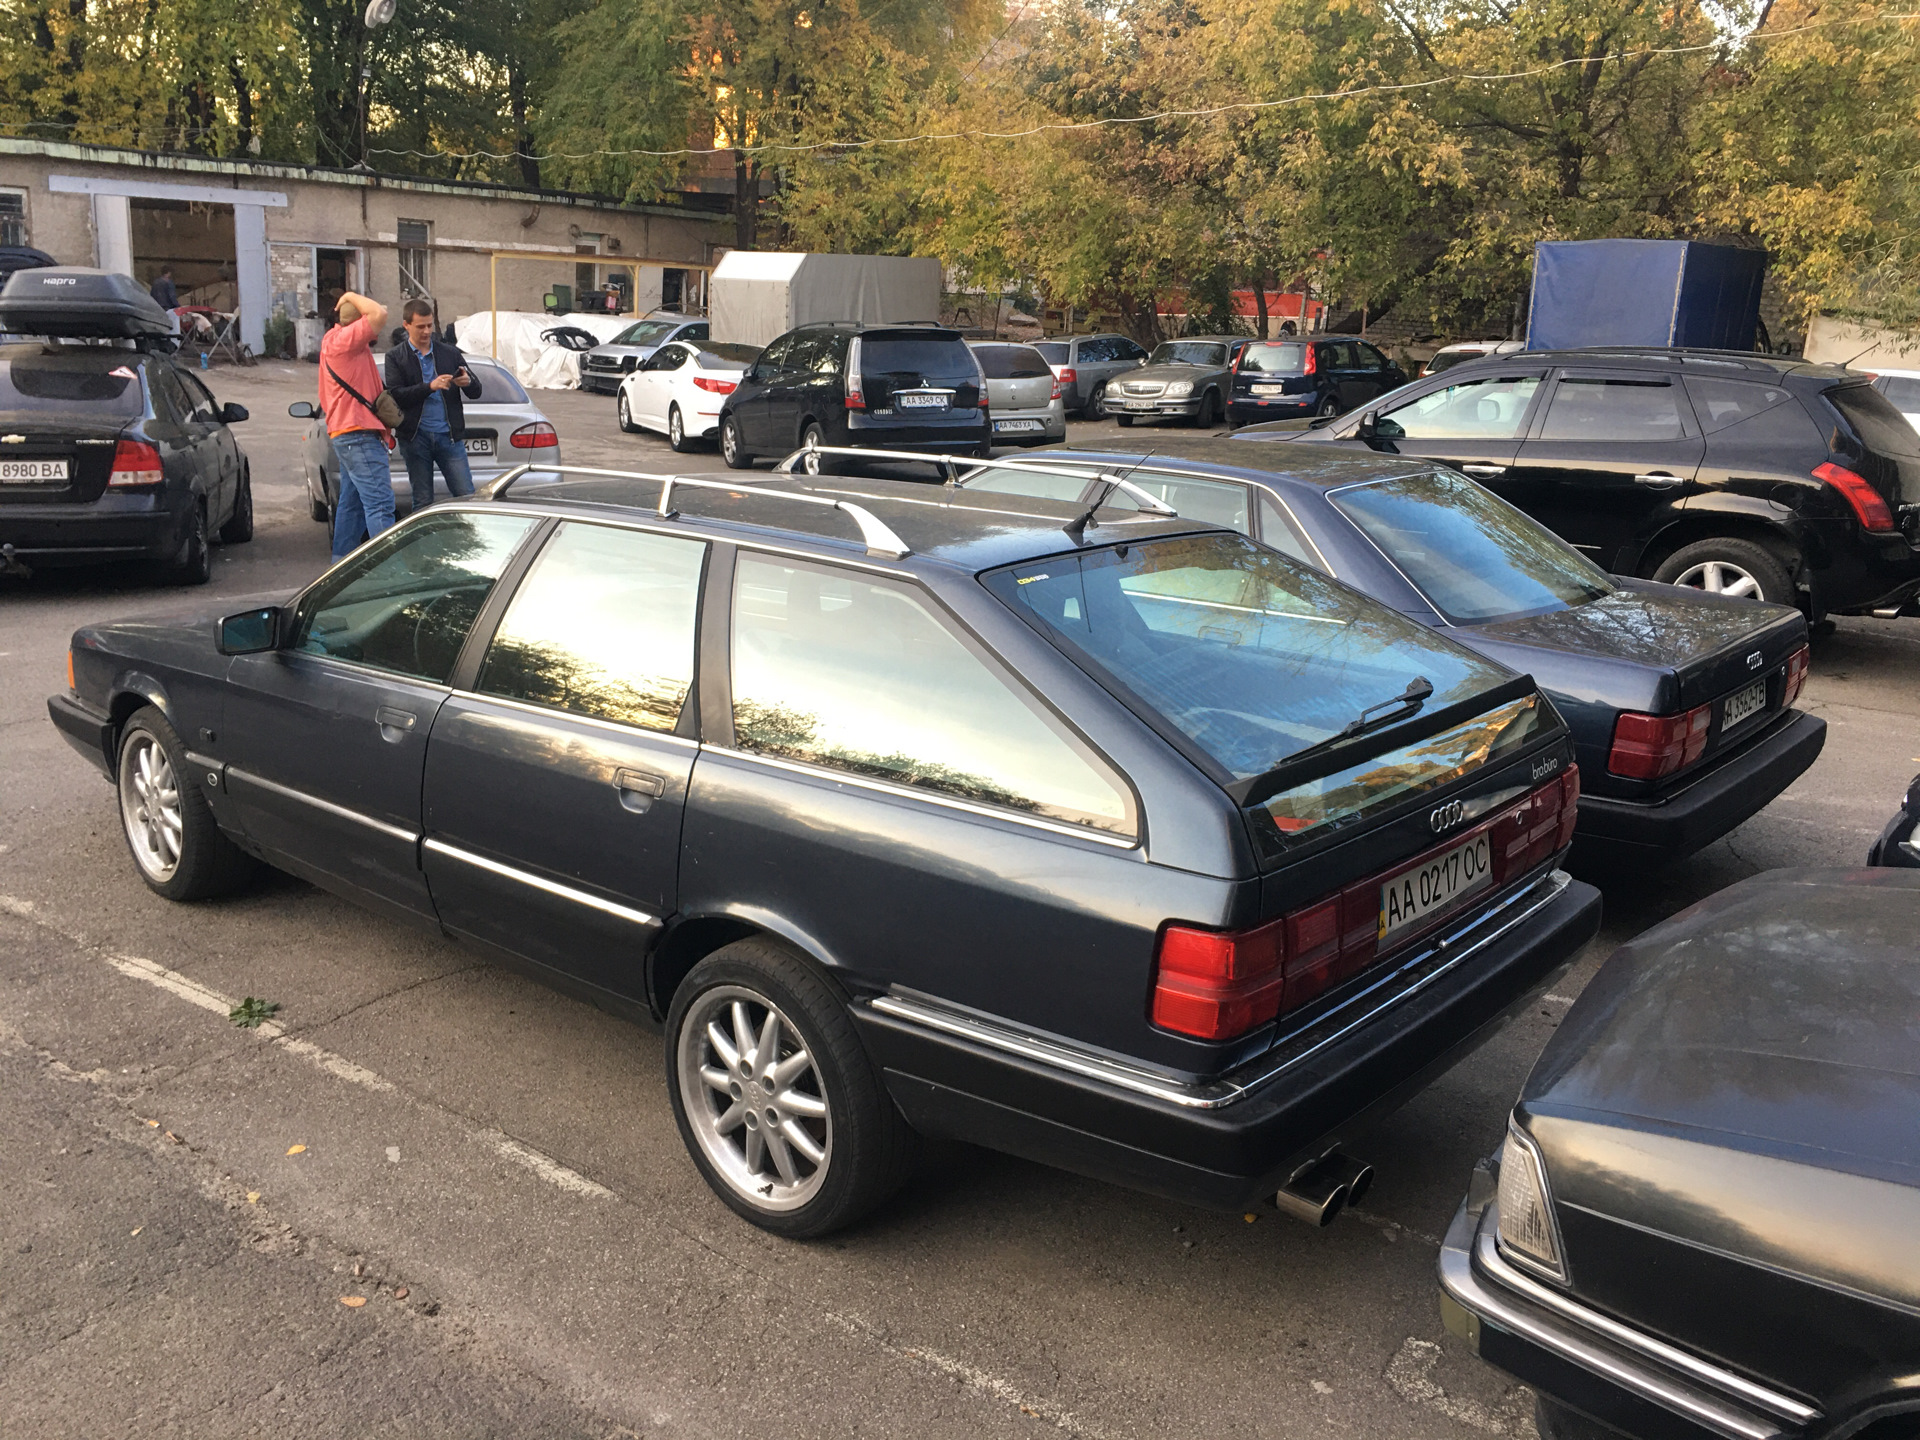 200 20 а 6 60. Audi 200 20v. Ауди 200 Авант. "Audi" "200" "1983" VW. "Audi" "200" "1990" LX.